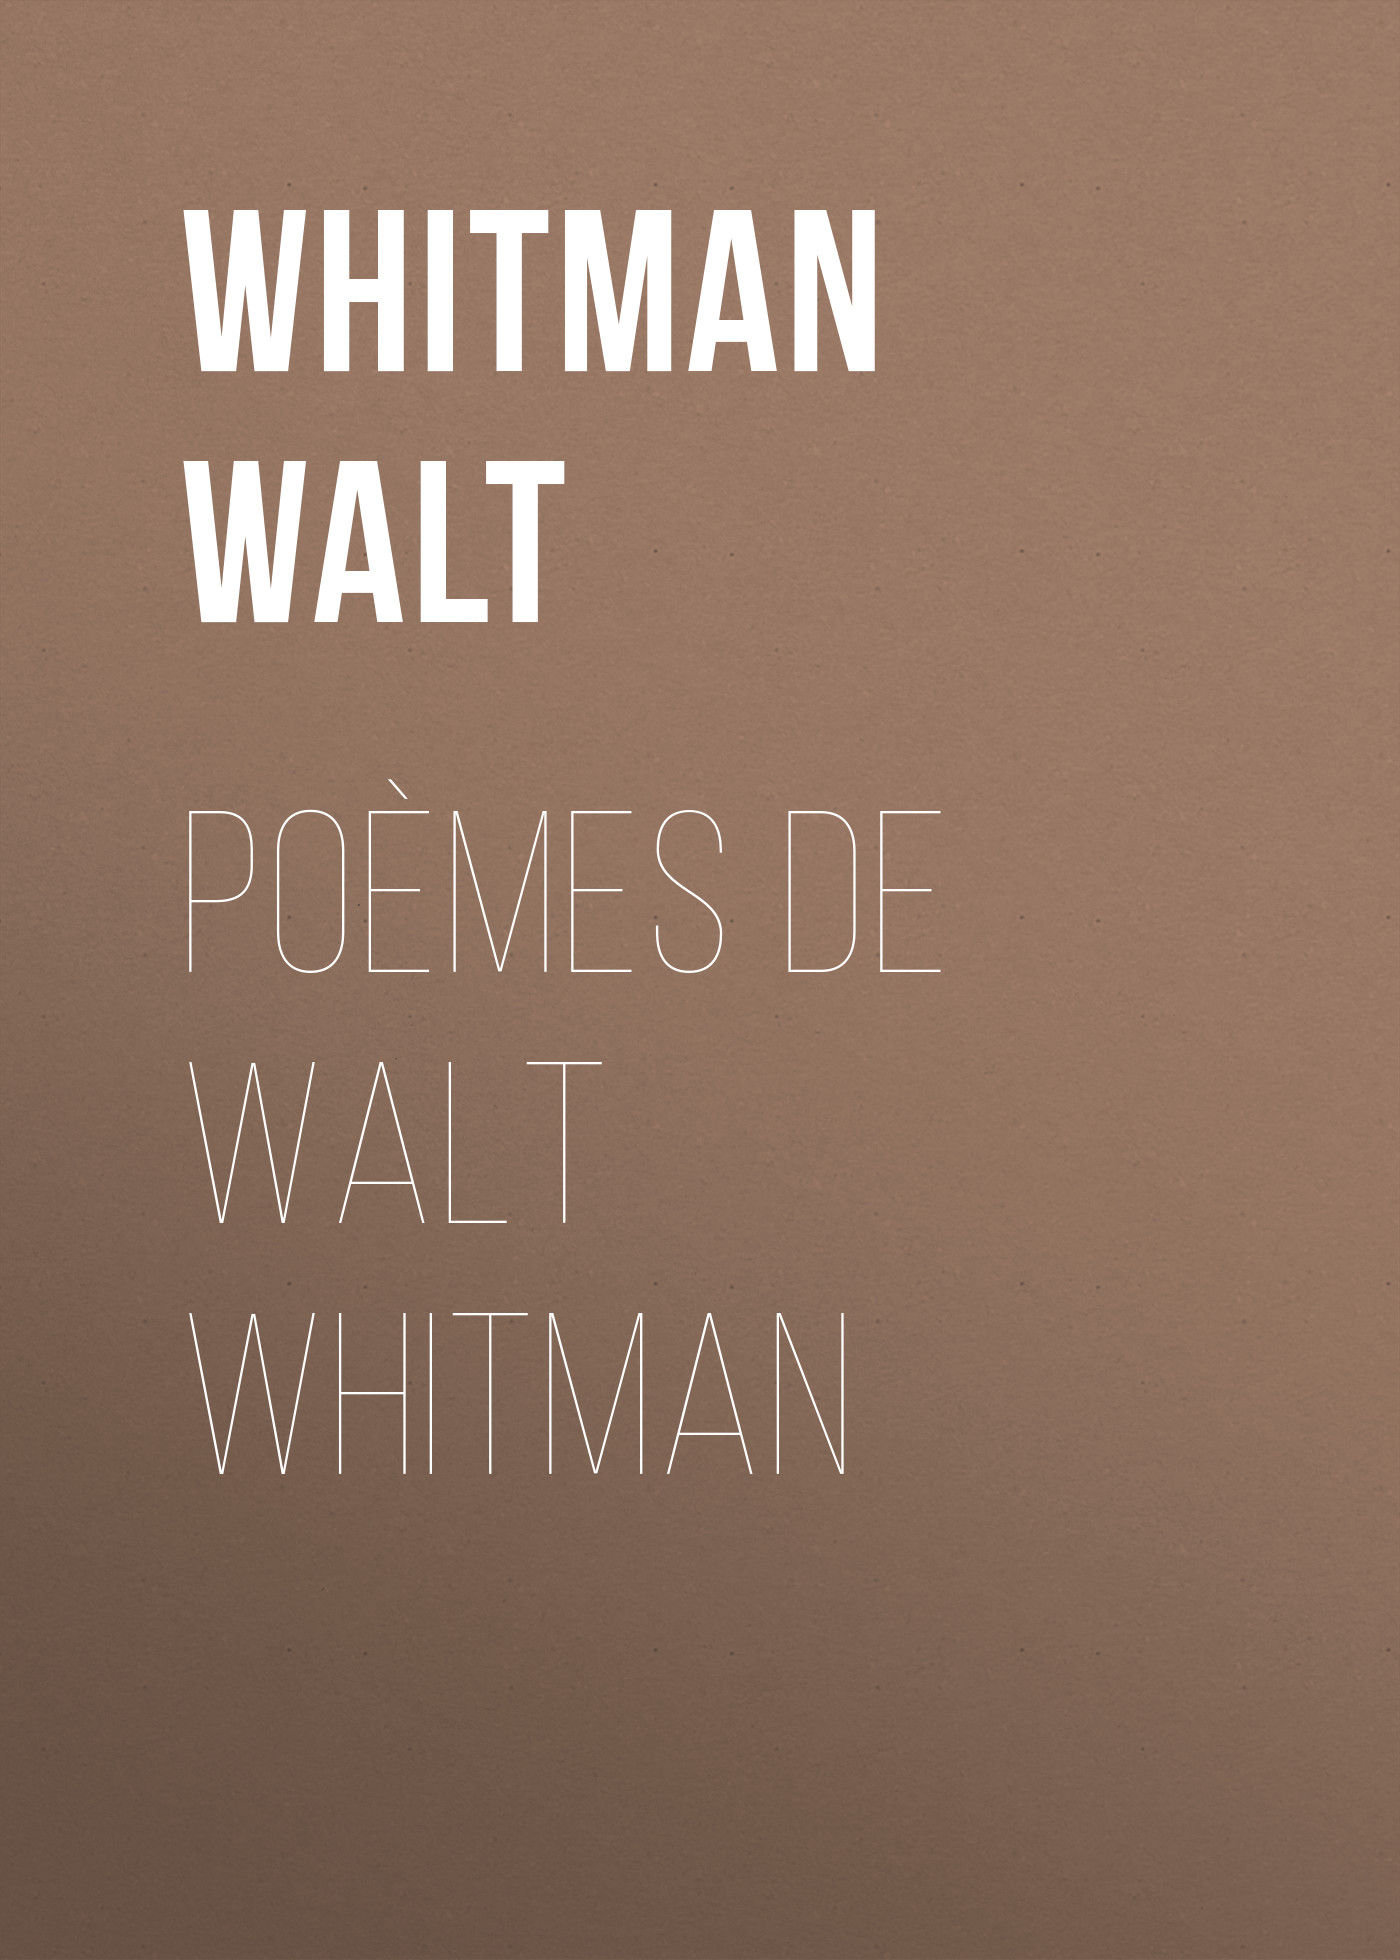 Книга Poèmes de Walt Whitman из серии , созданная Уолт Уитмен, может относится к жанру Зарубежные стихи, Литература 19 века, Поэзия, Зарубежная старинная литература, Зарубежная классика. Стоимость электронной книги Poèmes de Walt Whitman с идентификатором 34337834 составляет 0 руб.